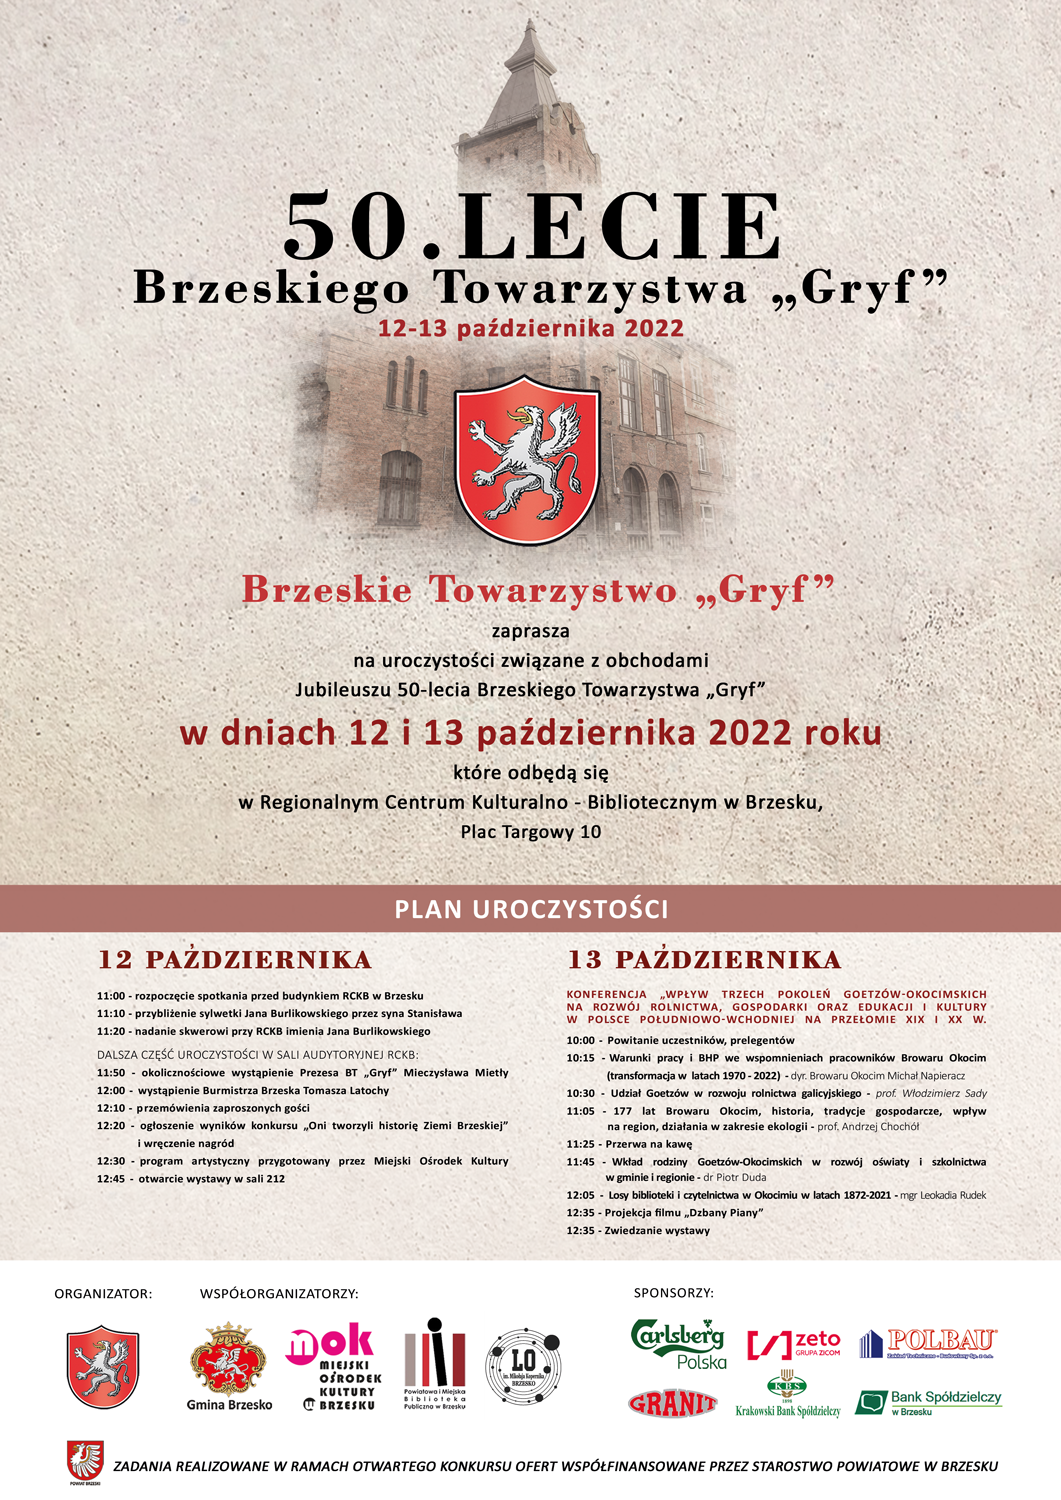 50. lecie Brzeskiego Towarzystwa Gryf – 12-13 października 2022